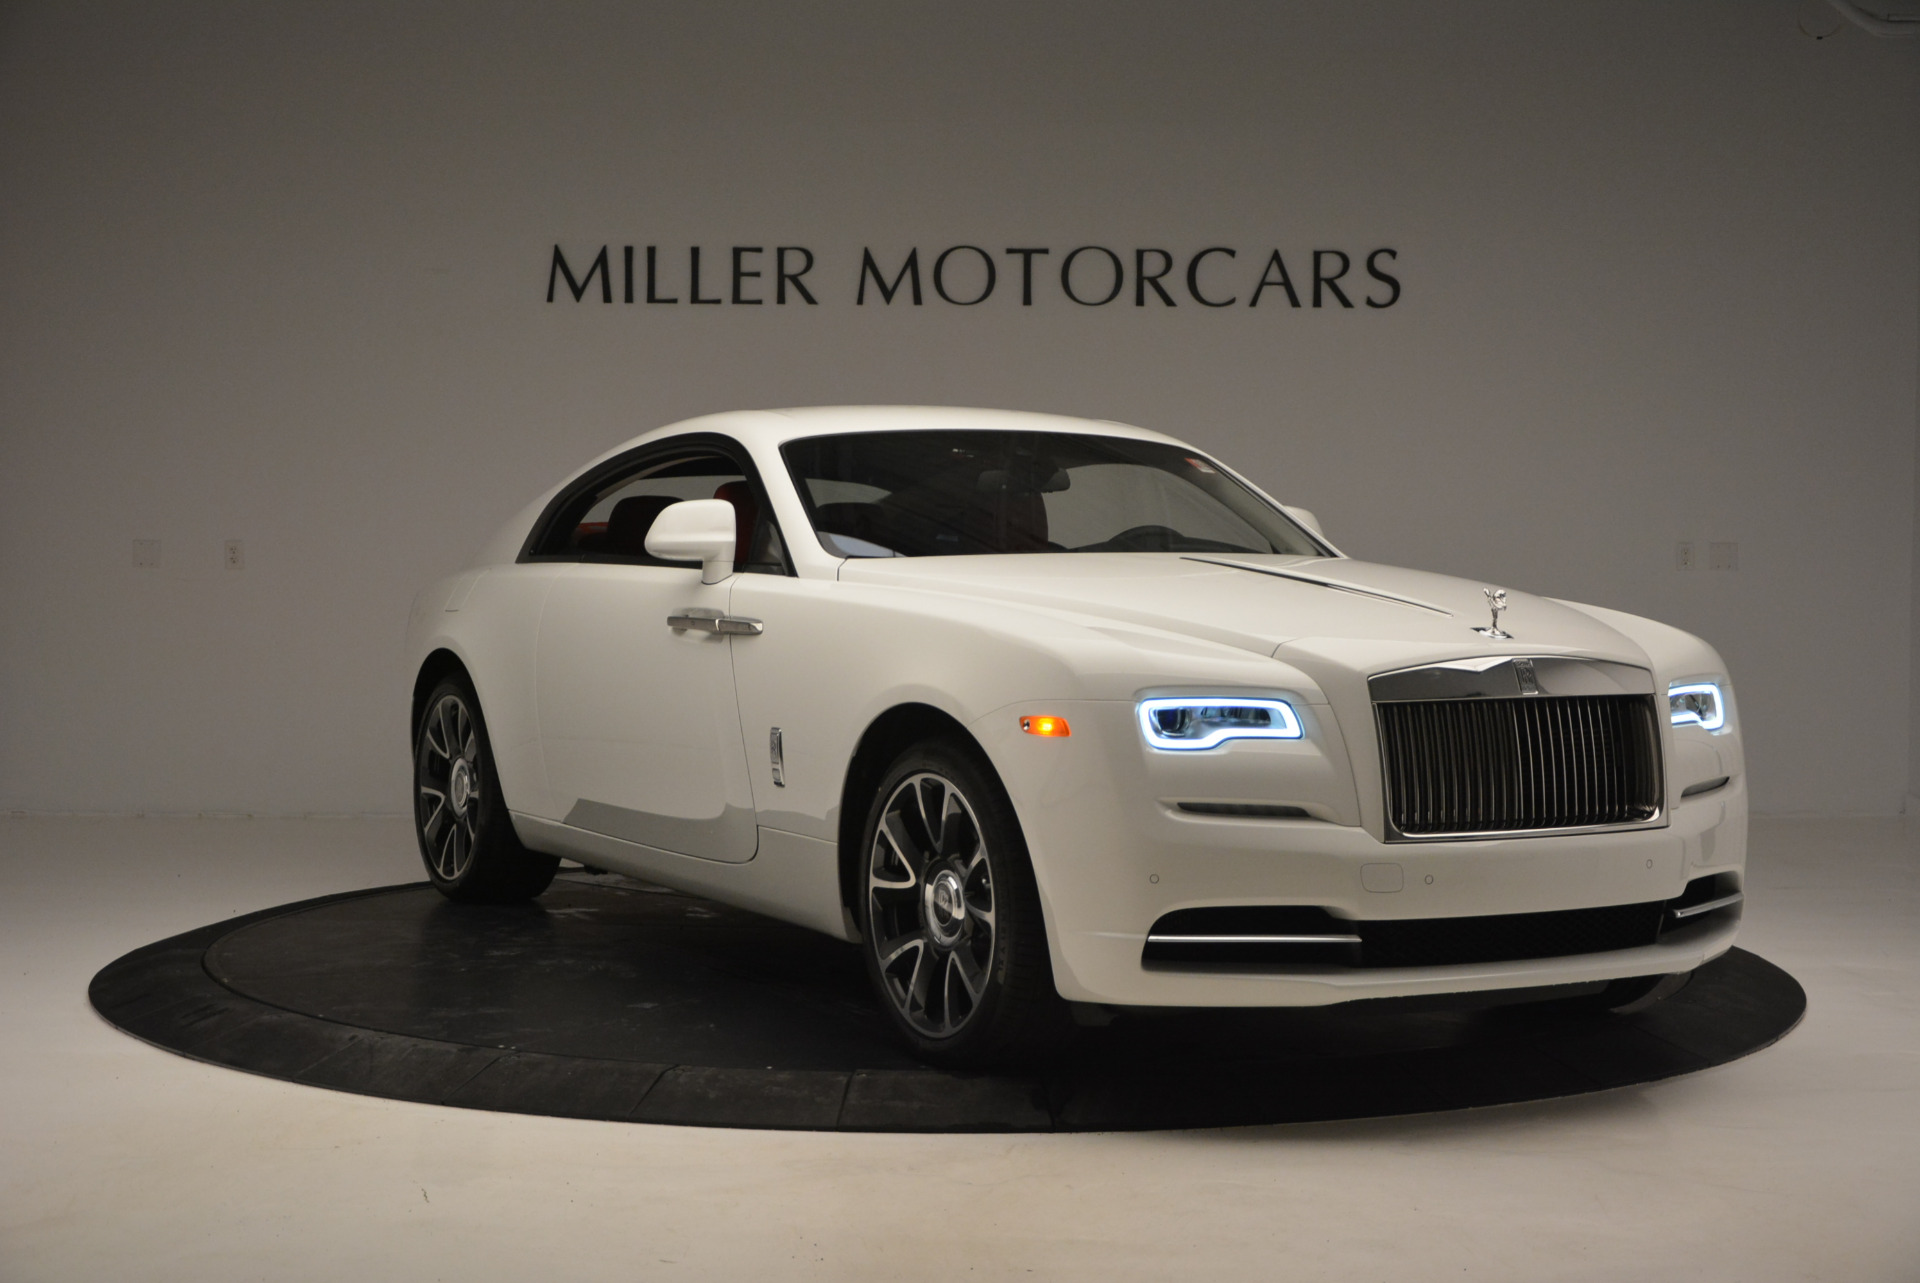 New 2017 Rolls Royce Wraith